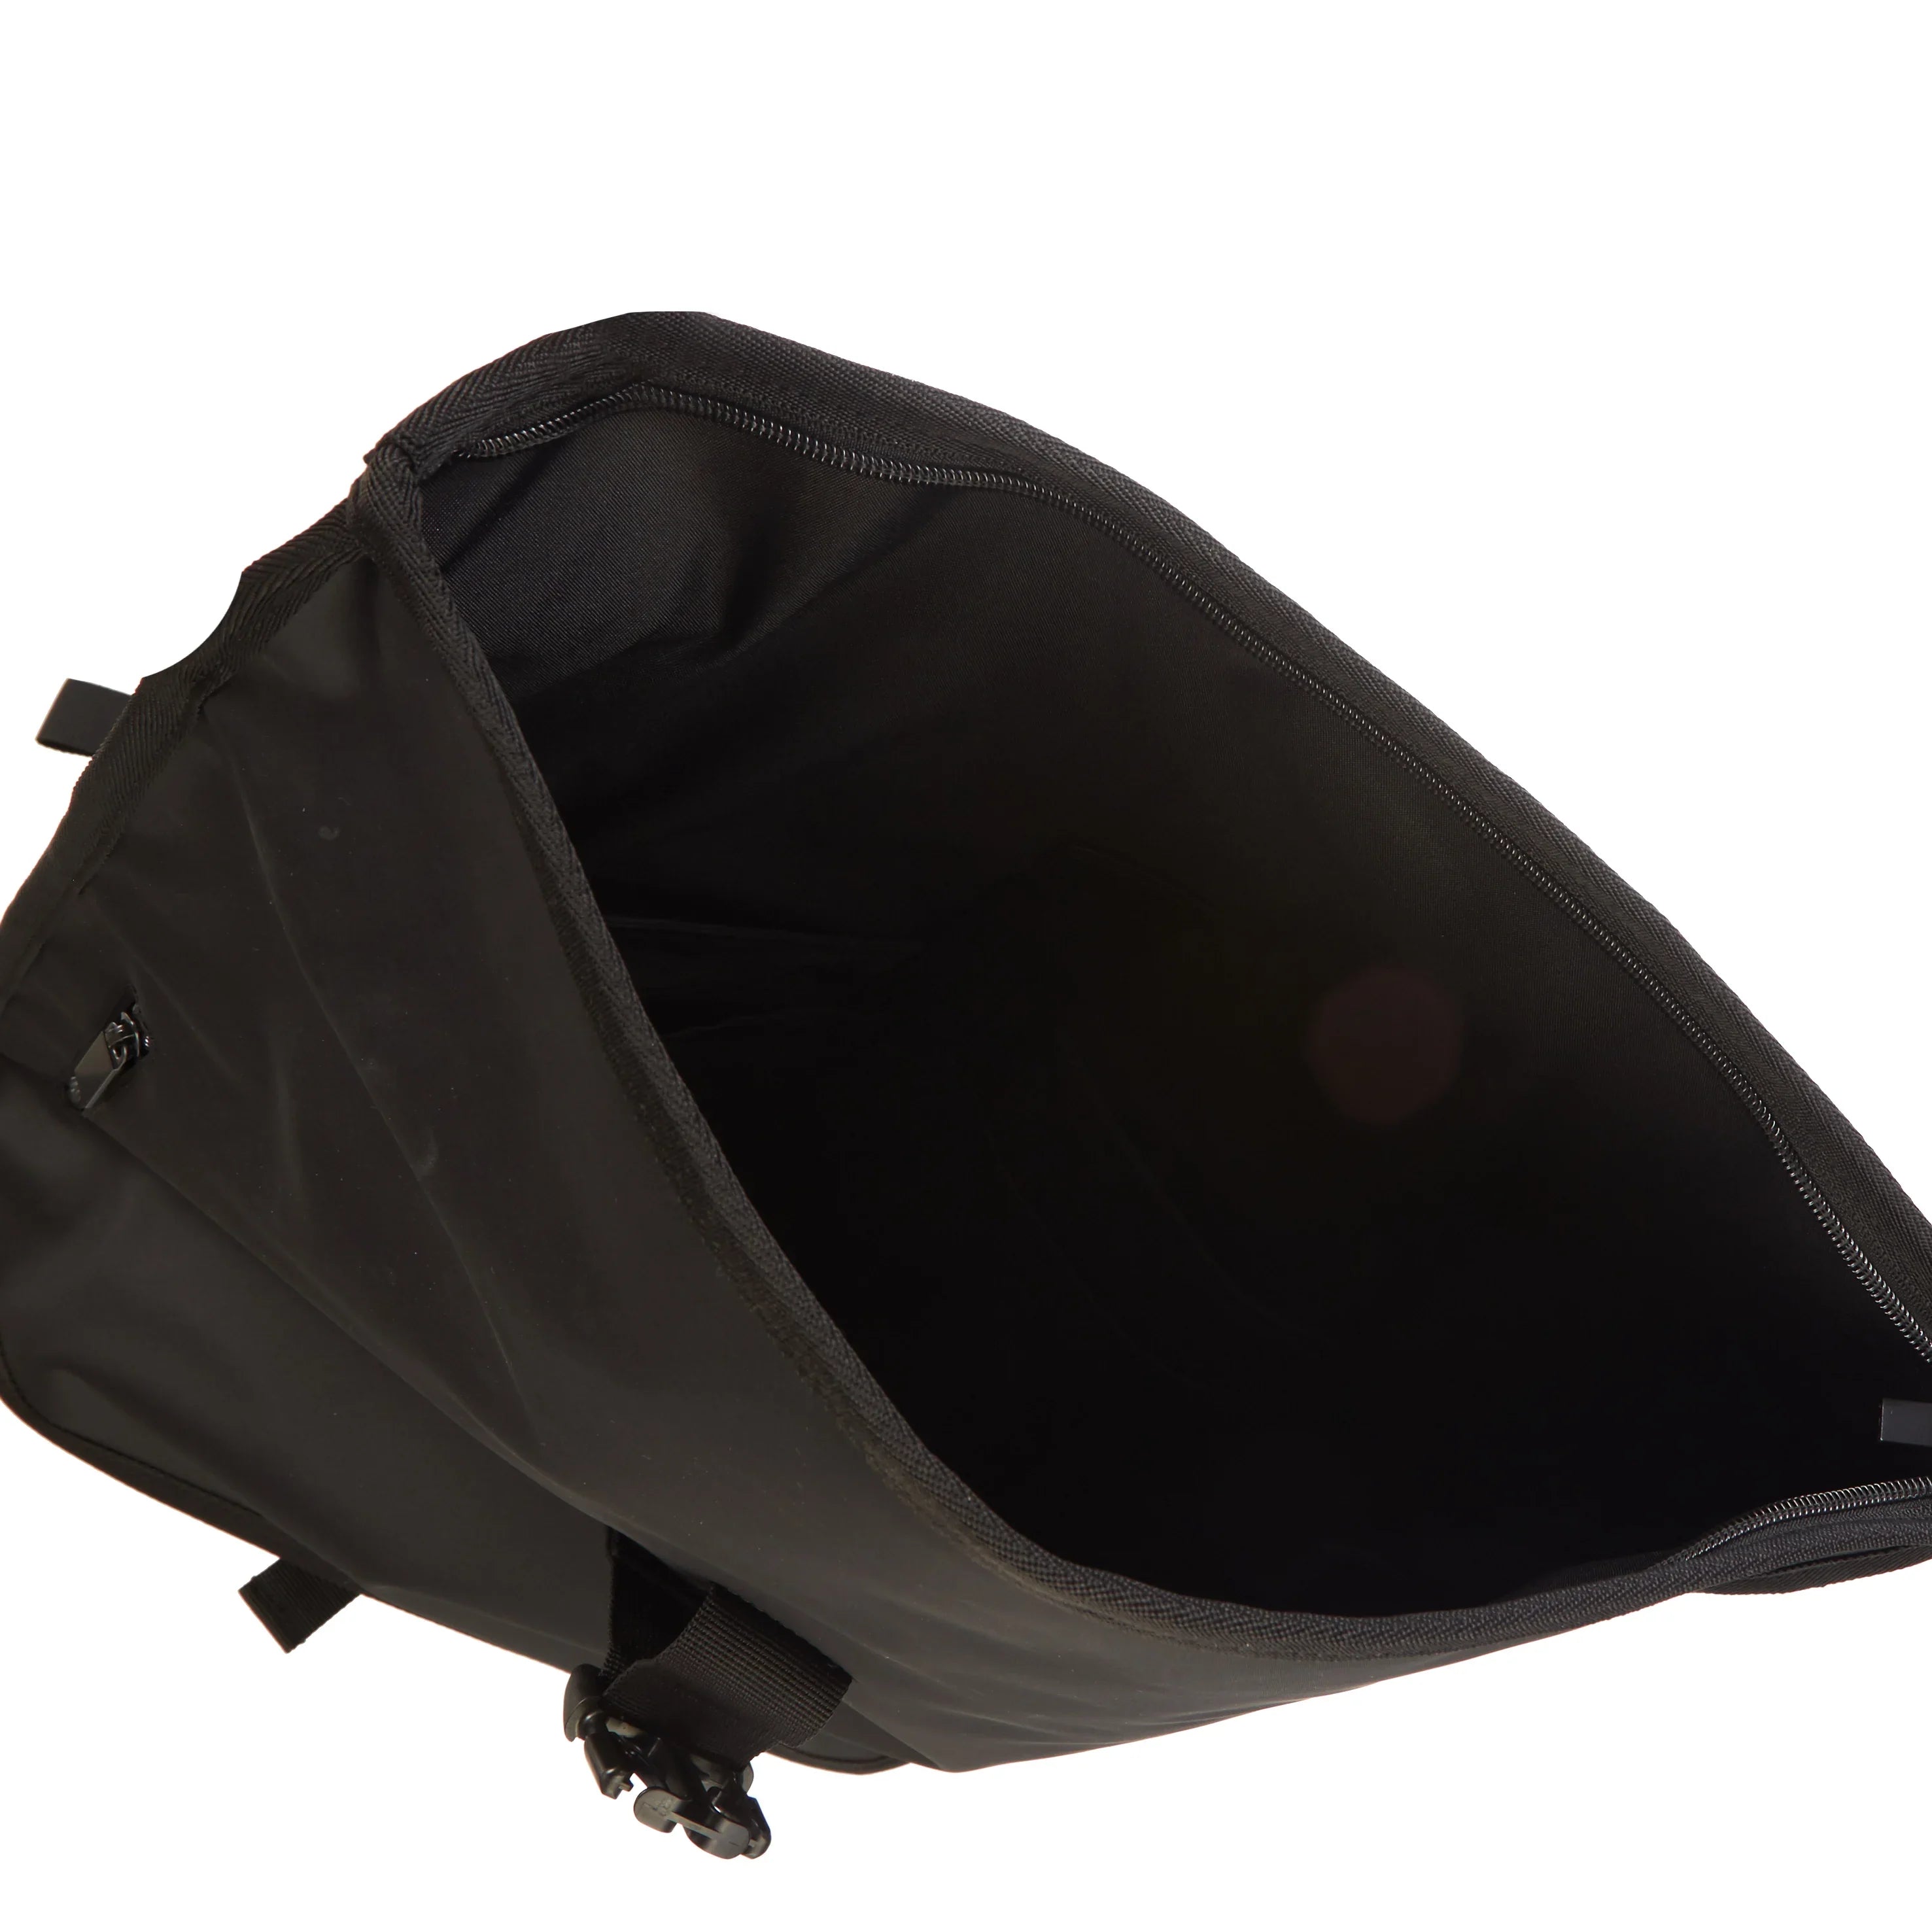 Bree PNCH V1 Body Bag 40 cm - Black